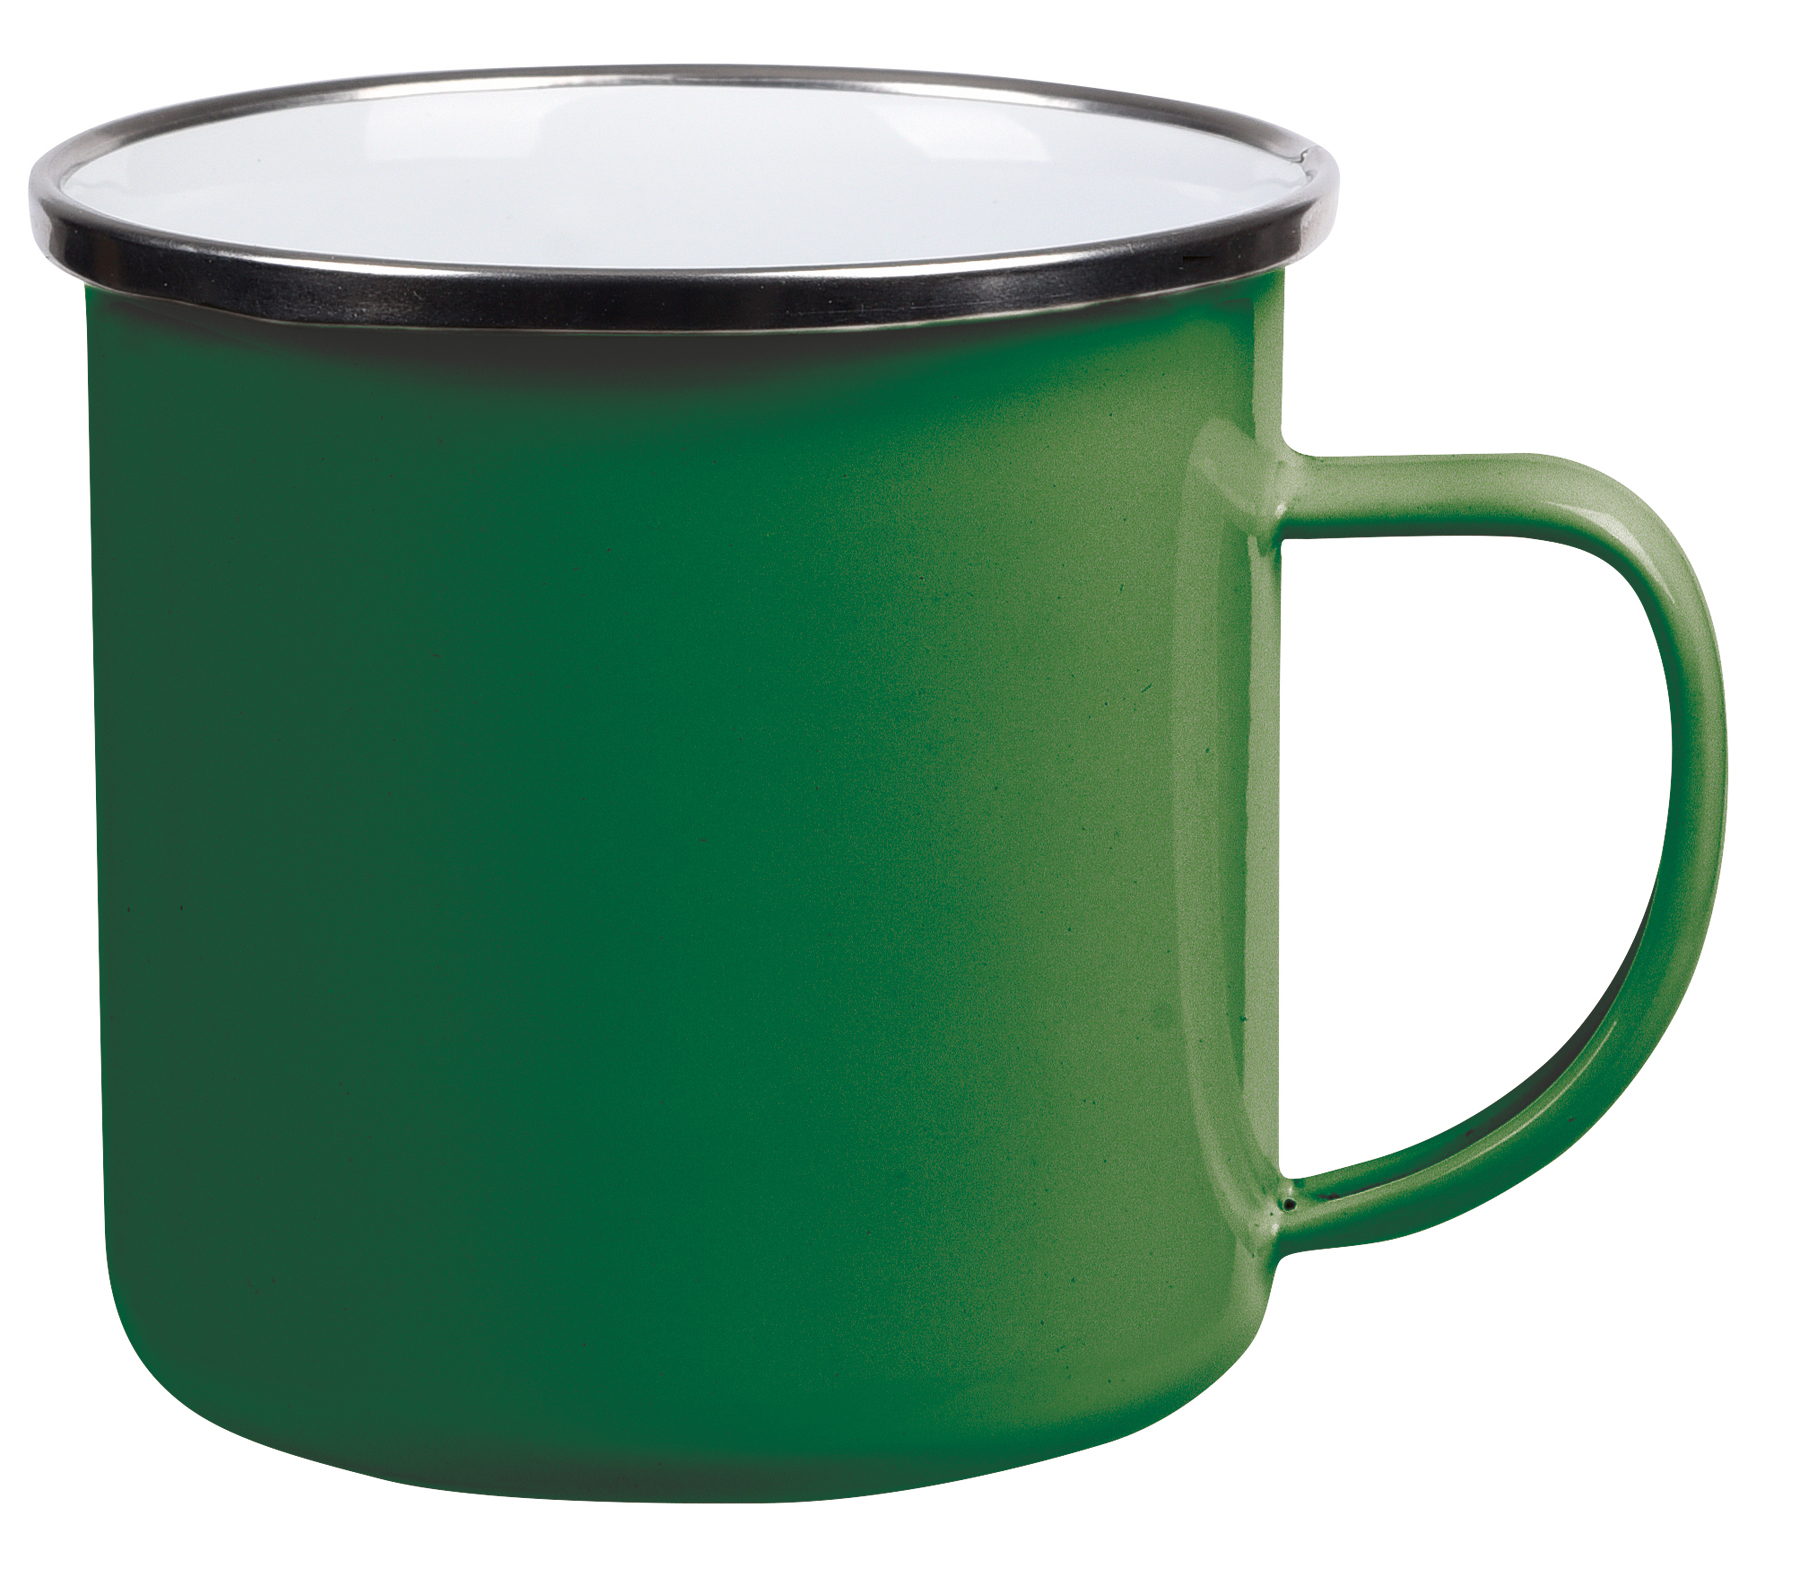 Smaltovaný nápojový hrnek VINTAGE CUP: vyroben z nerezové oceli s uchem, barvená vnější strana s bílým vnitřkem, stříbrný nerezový okraj, kapacita cca. 350 ml  - zelená - foto